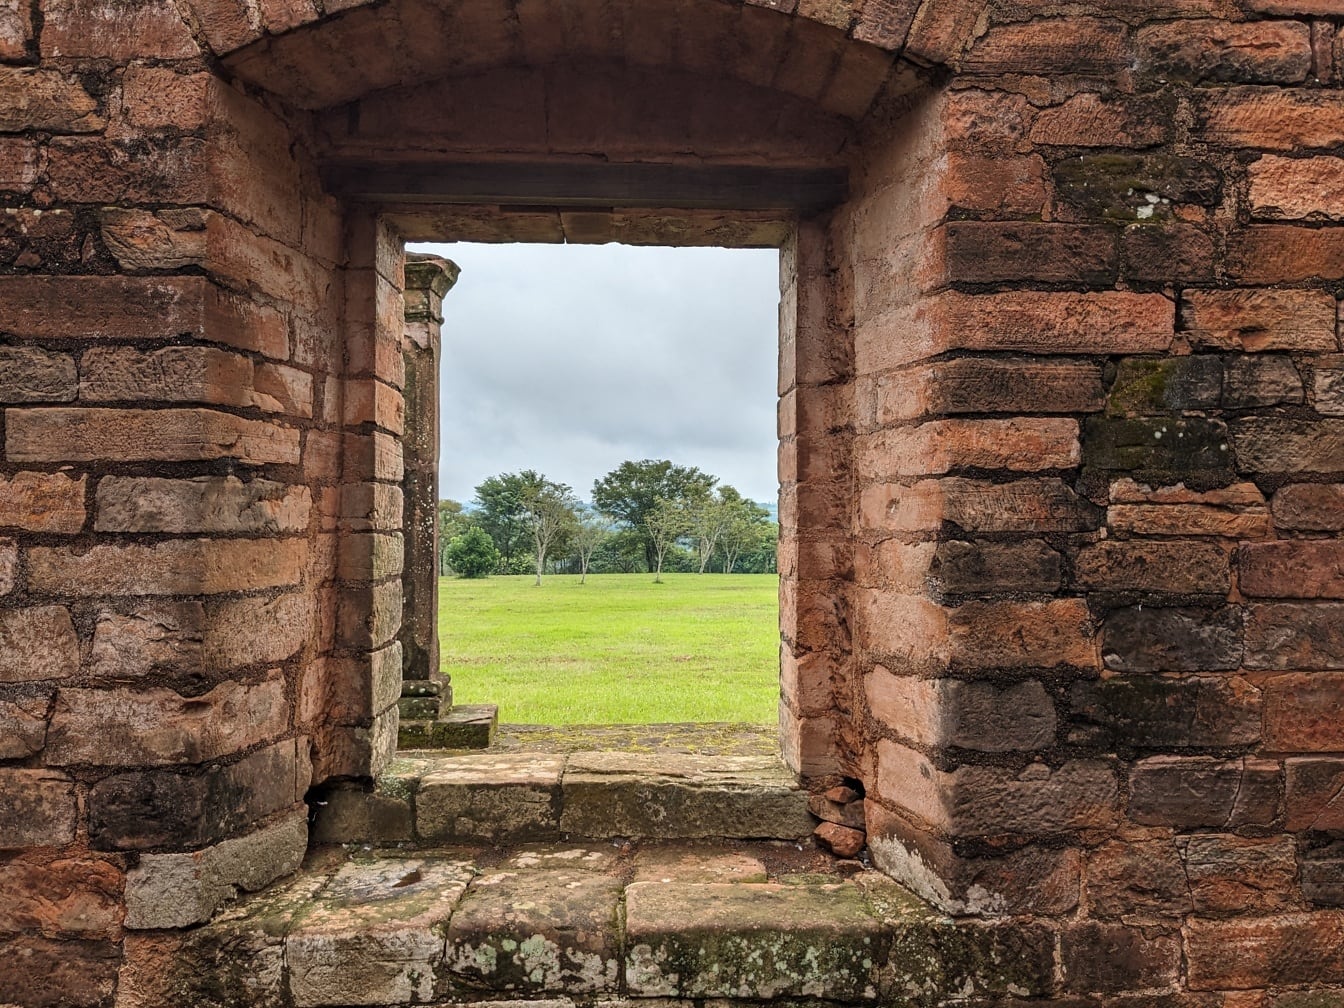 パラグアイの考古学的遺跡であるイエズス会伝道所のレンガの壁の中世の窓